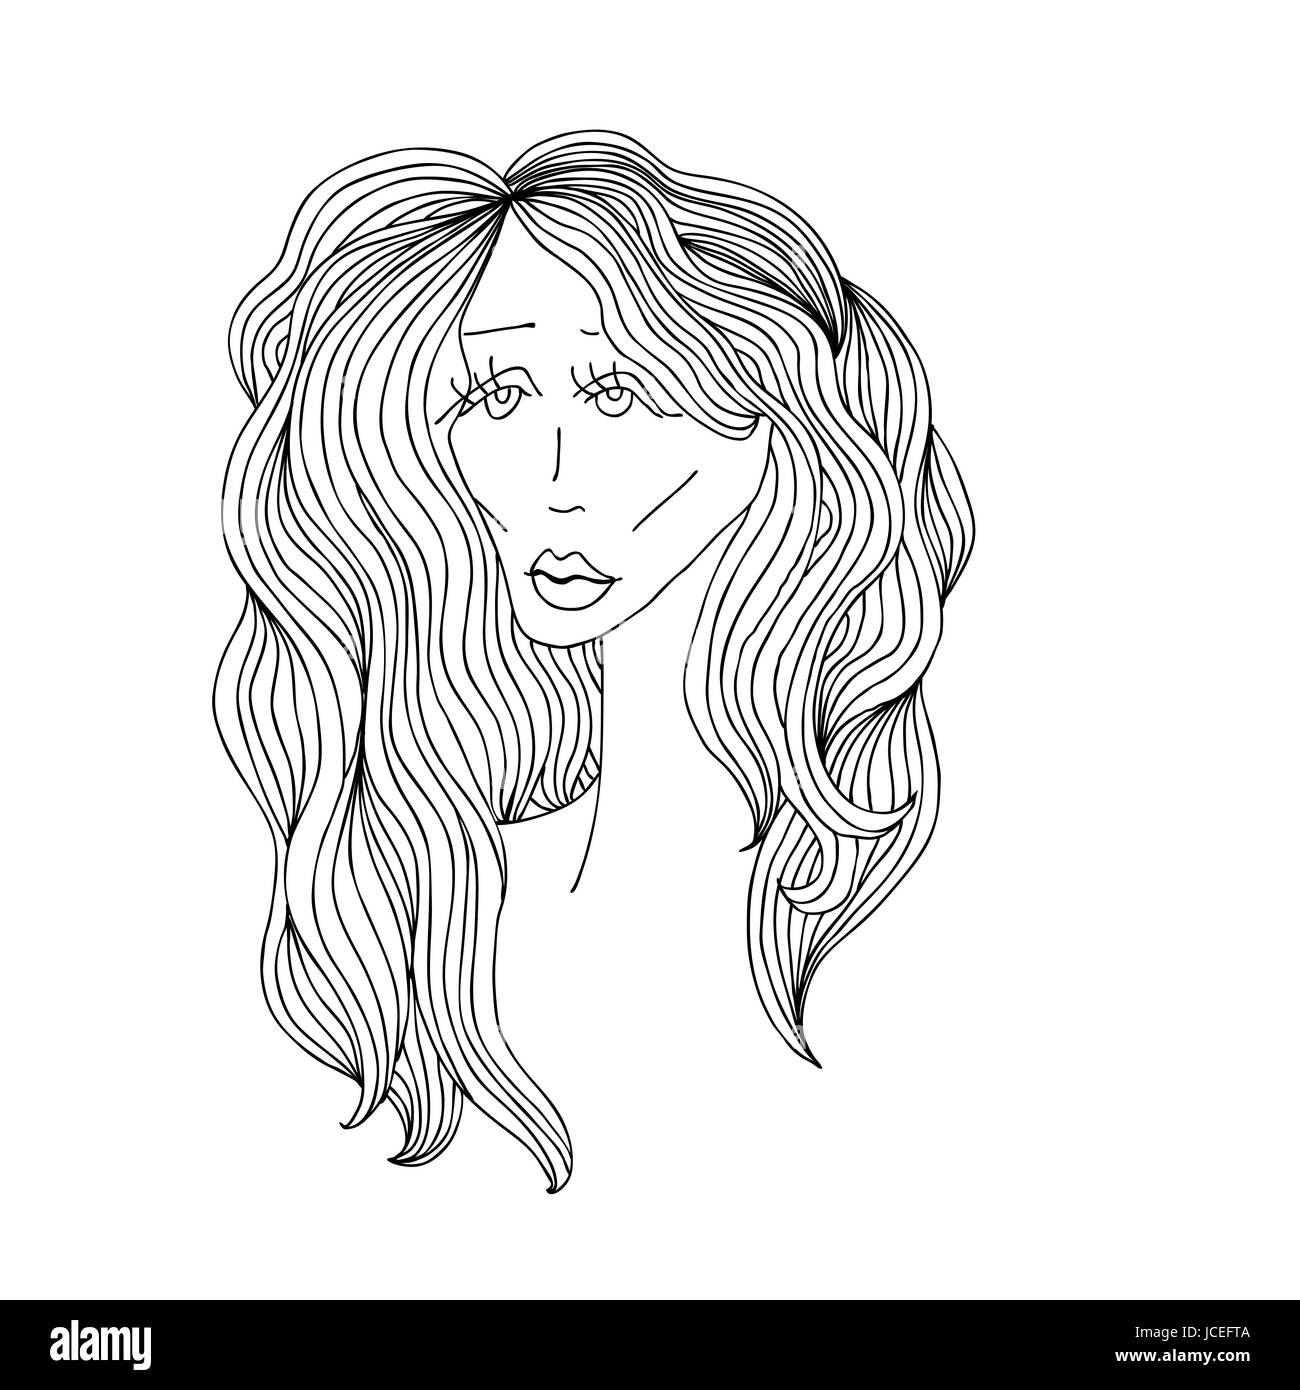 Traurige Frau mit schönen Haaren. Digitale Skizze grafische schwarz-weiß-Stil. Vektor-Illustration. Stock Vektor